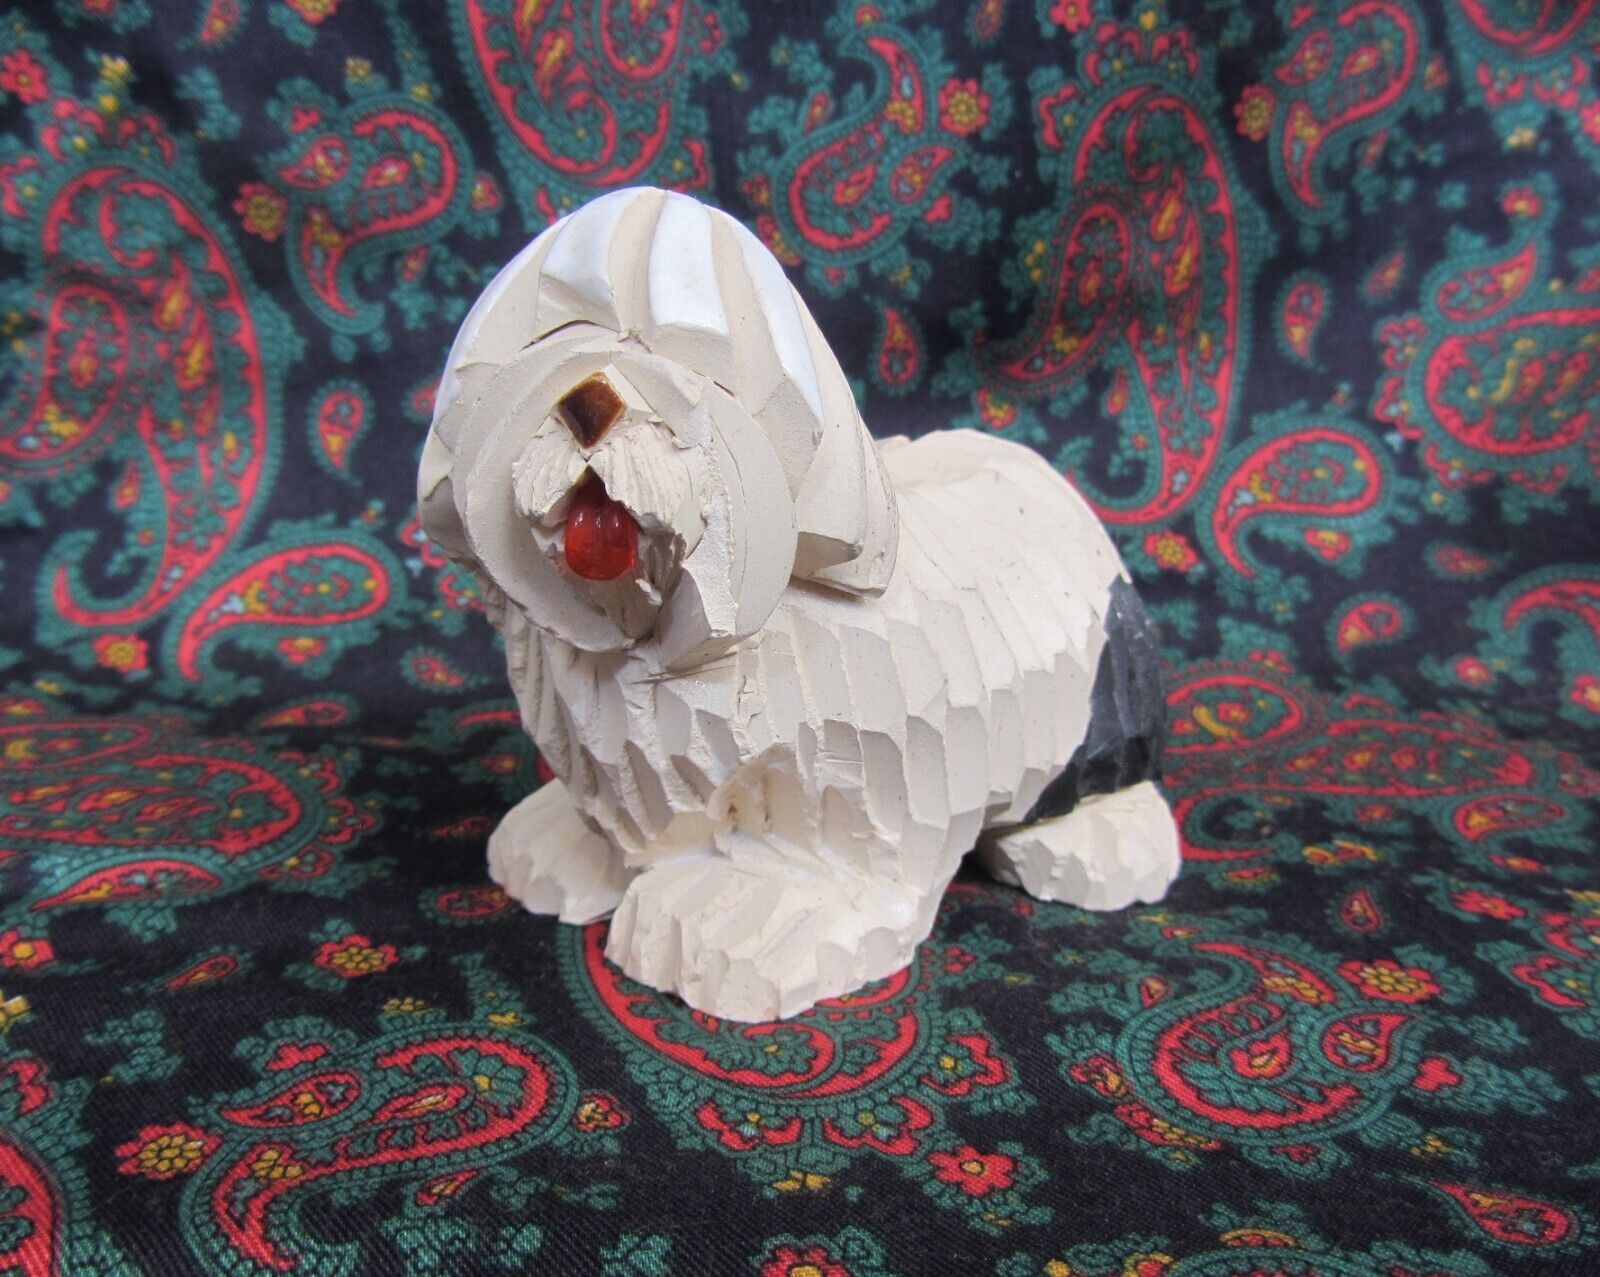 Vintage Old English Sheep Dog Figurine Art Signed Artesania Rinconada Shaggy Dog